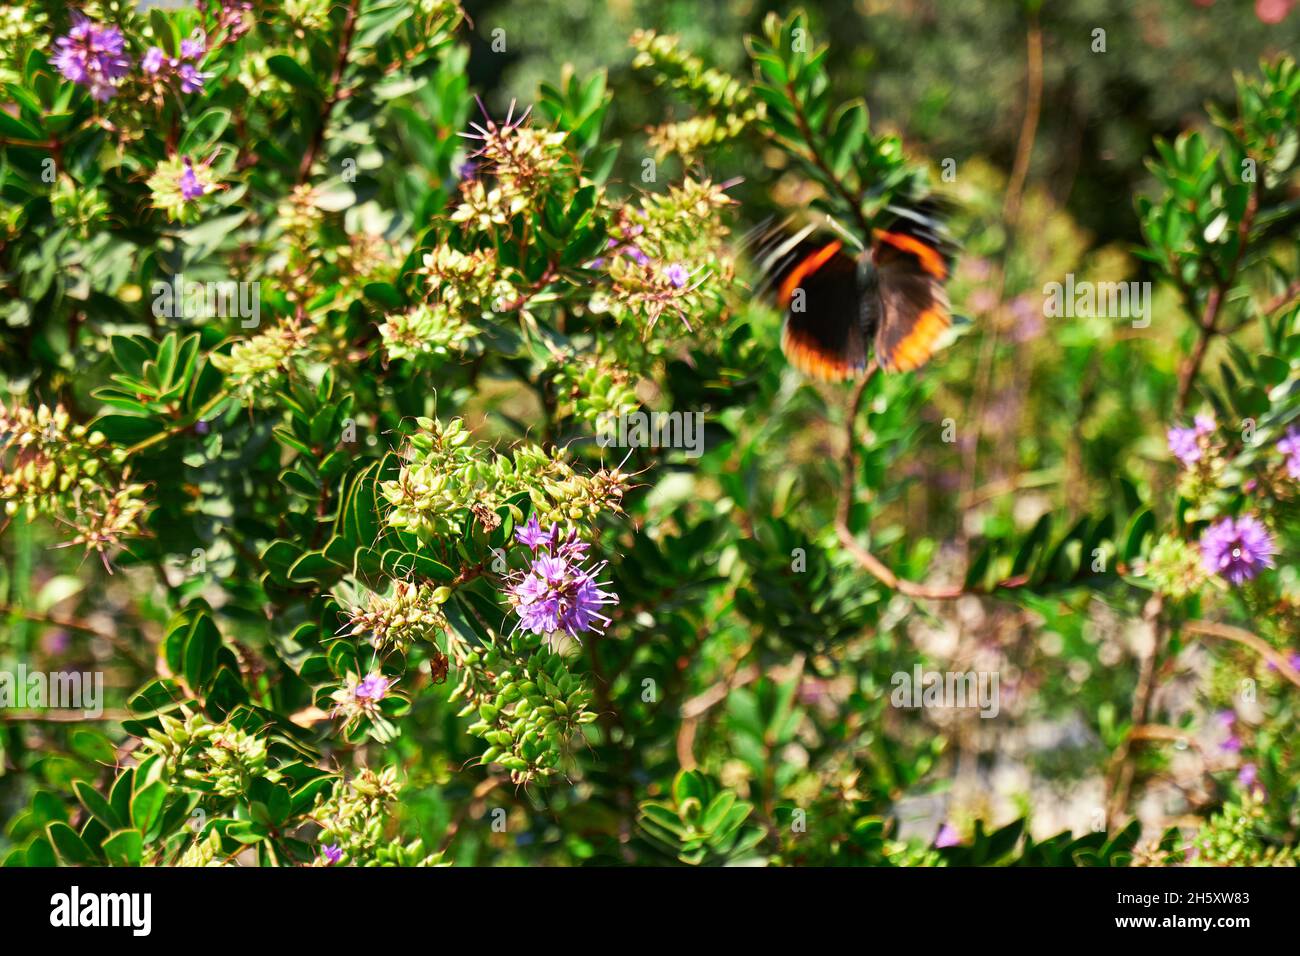 Selettivo di fiori e una farfalla in movimento Foto Stock